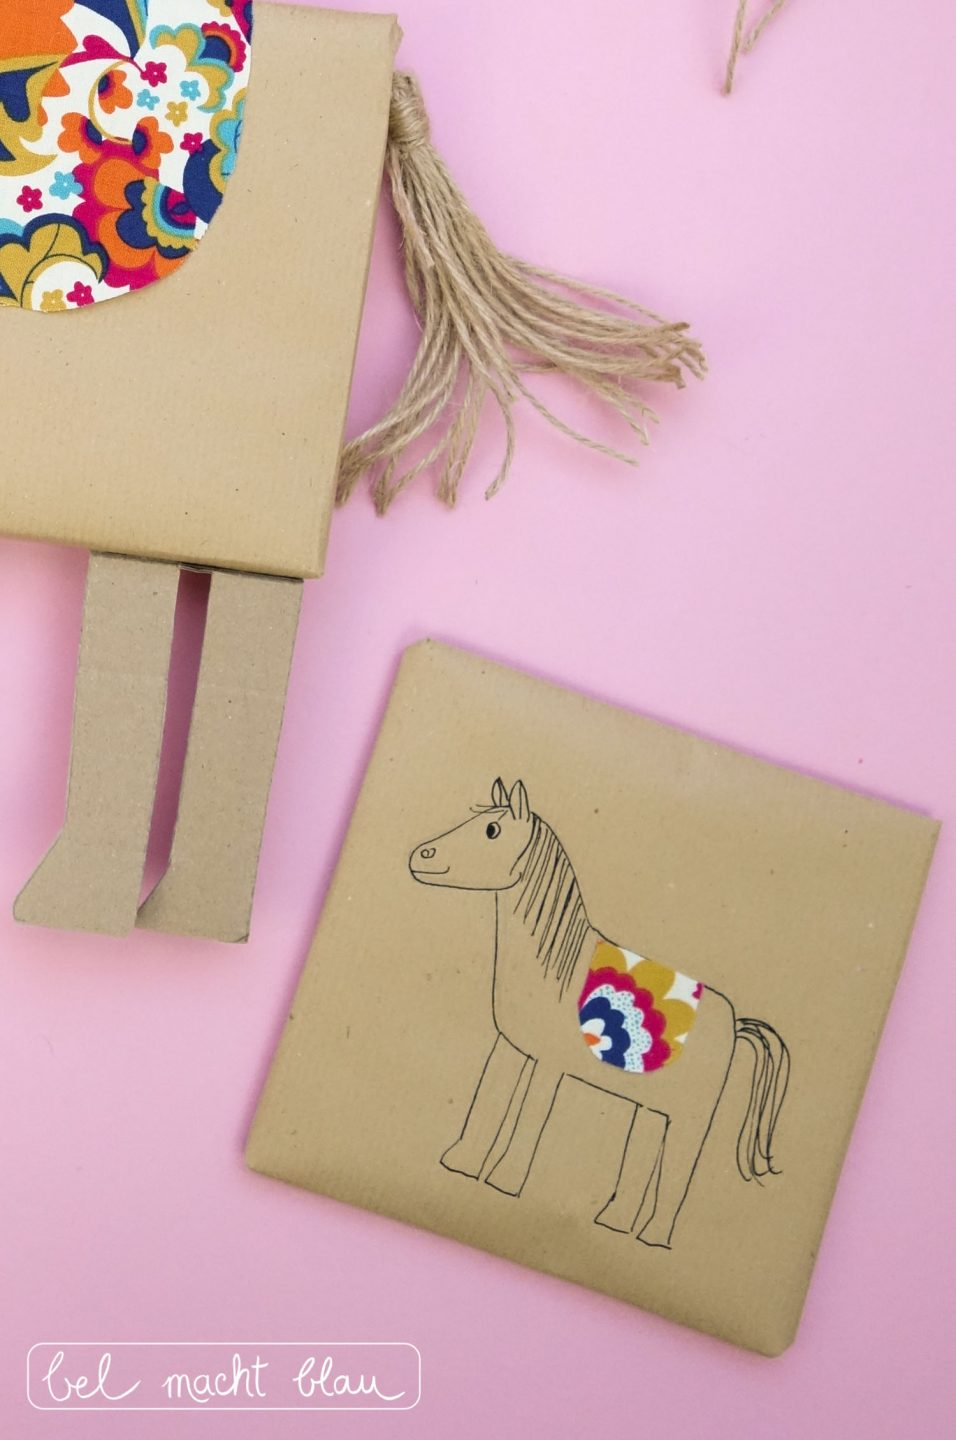 Pferde-Geschenkverpackung basteln: DIY-Anleitung mit Bastelvorlage, Verpackungsidee für den Kindergeburtstag